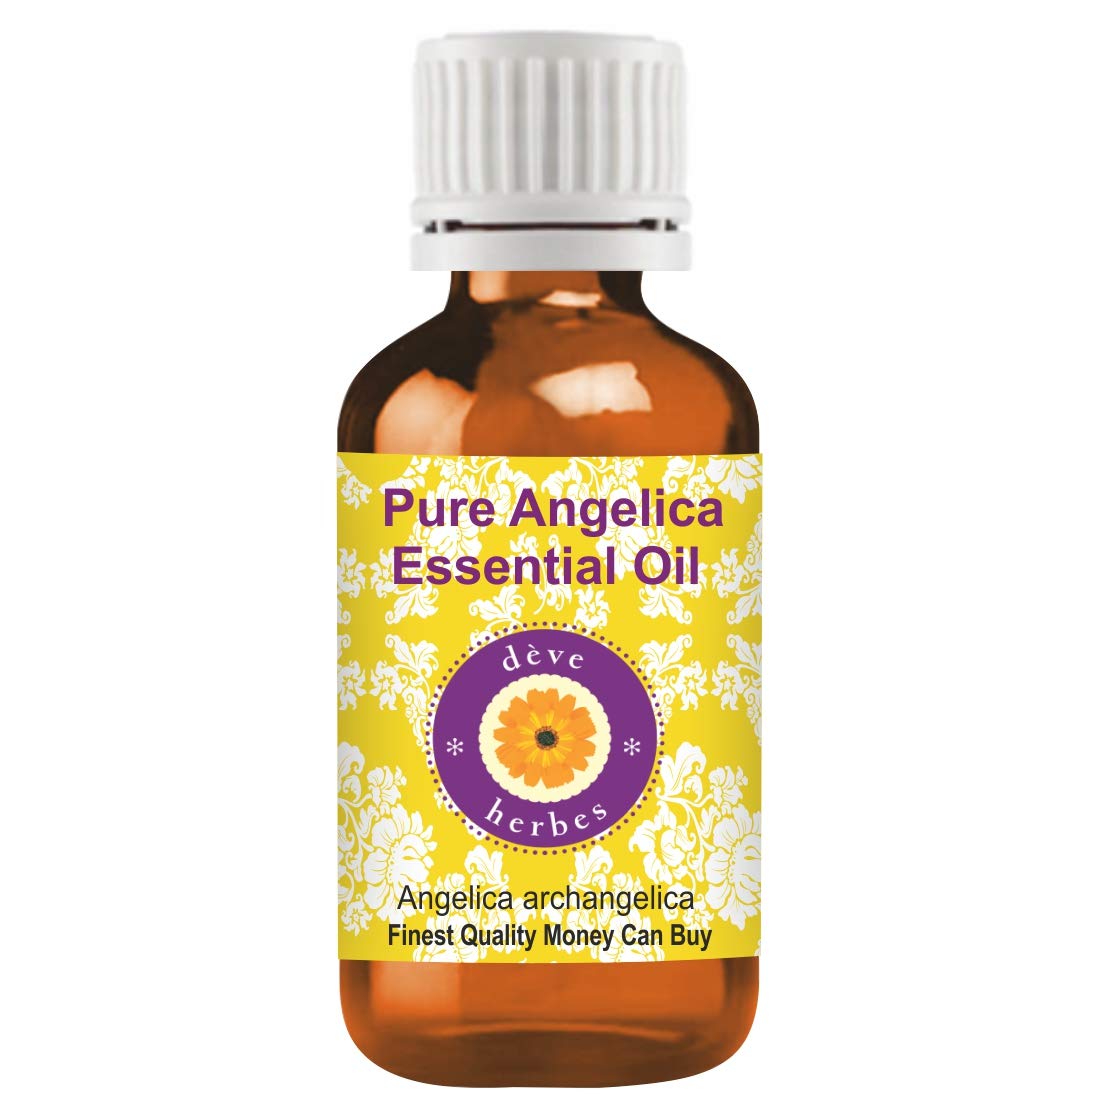 Deve Herbes Pure Angelica Essential Oil (Angelica archangelica) Steam Distilled 2ml